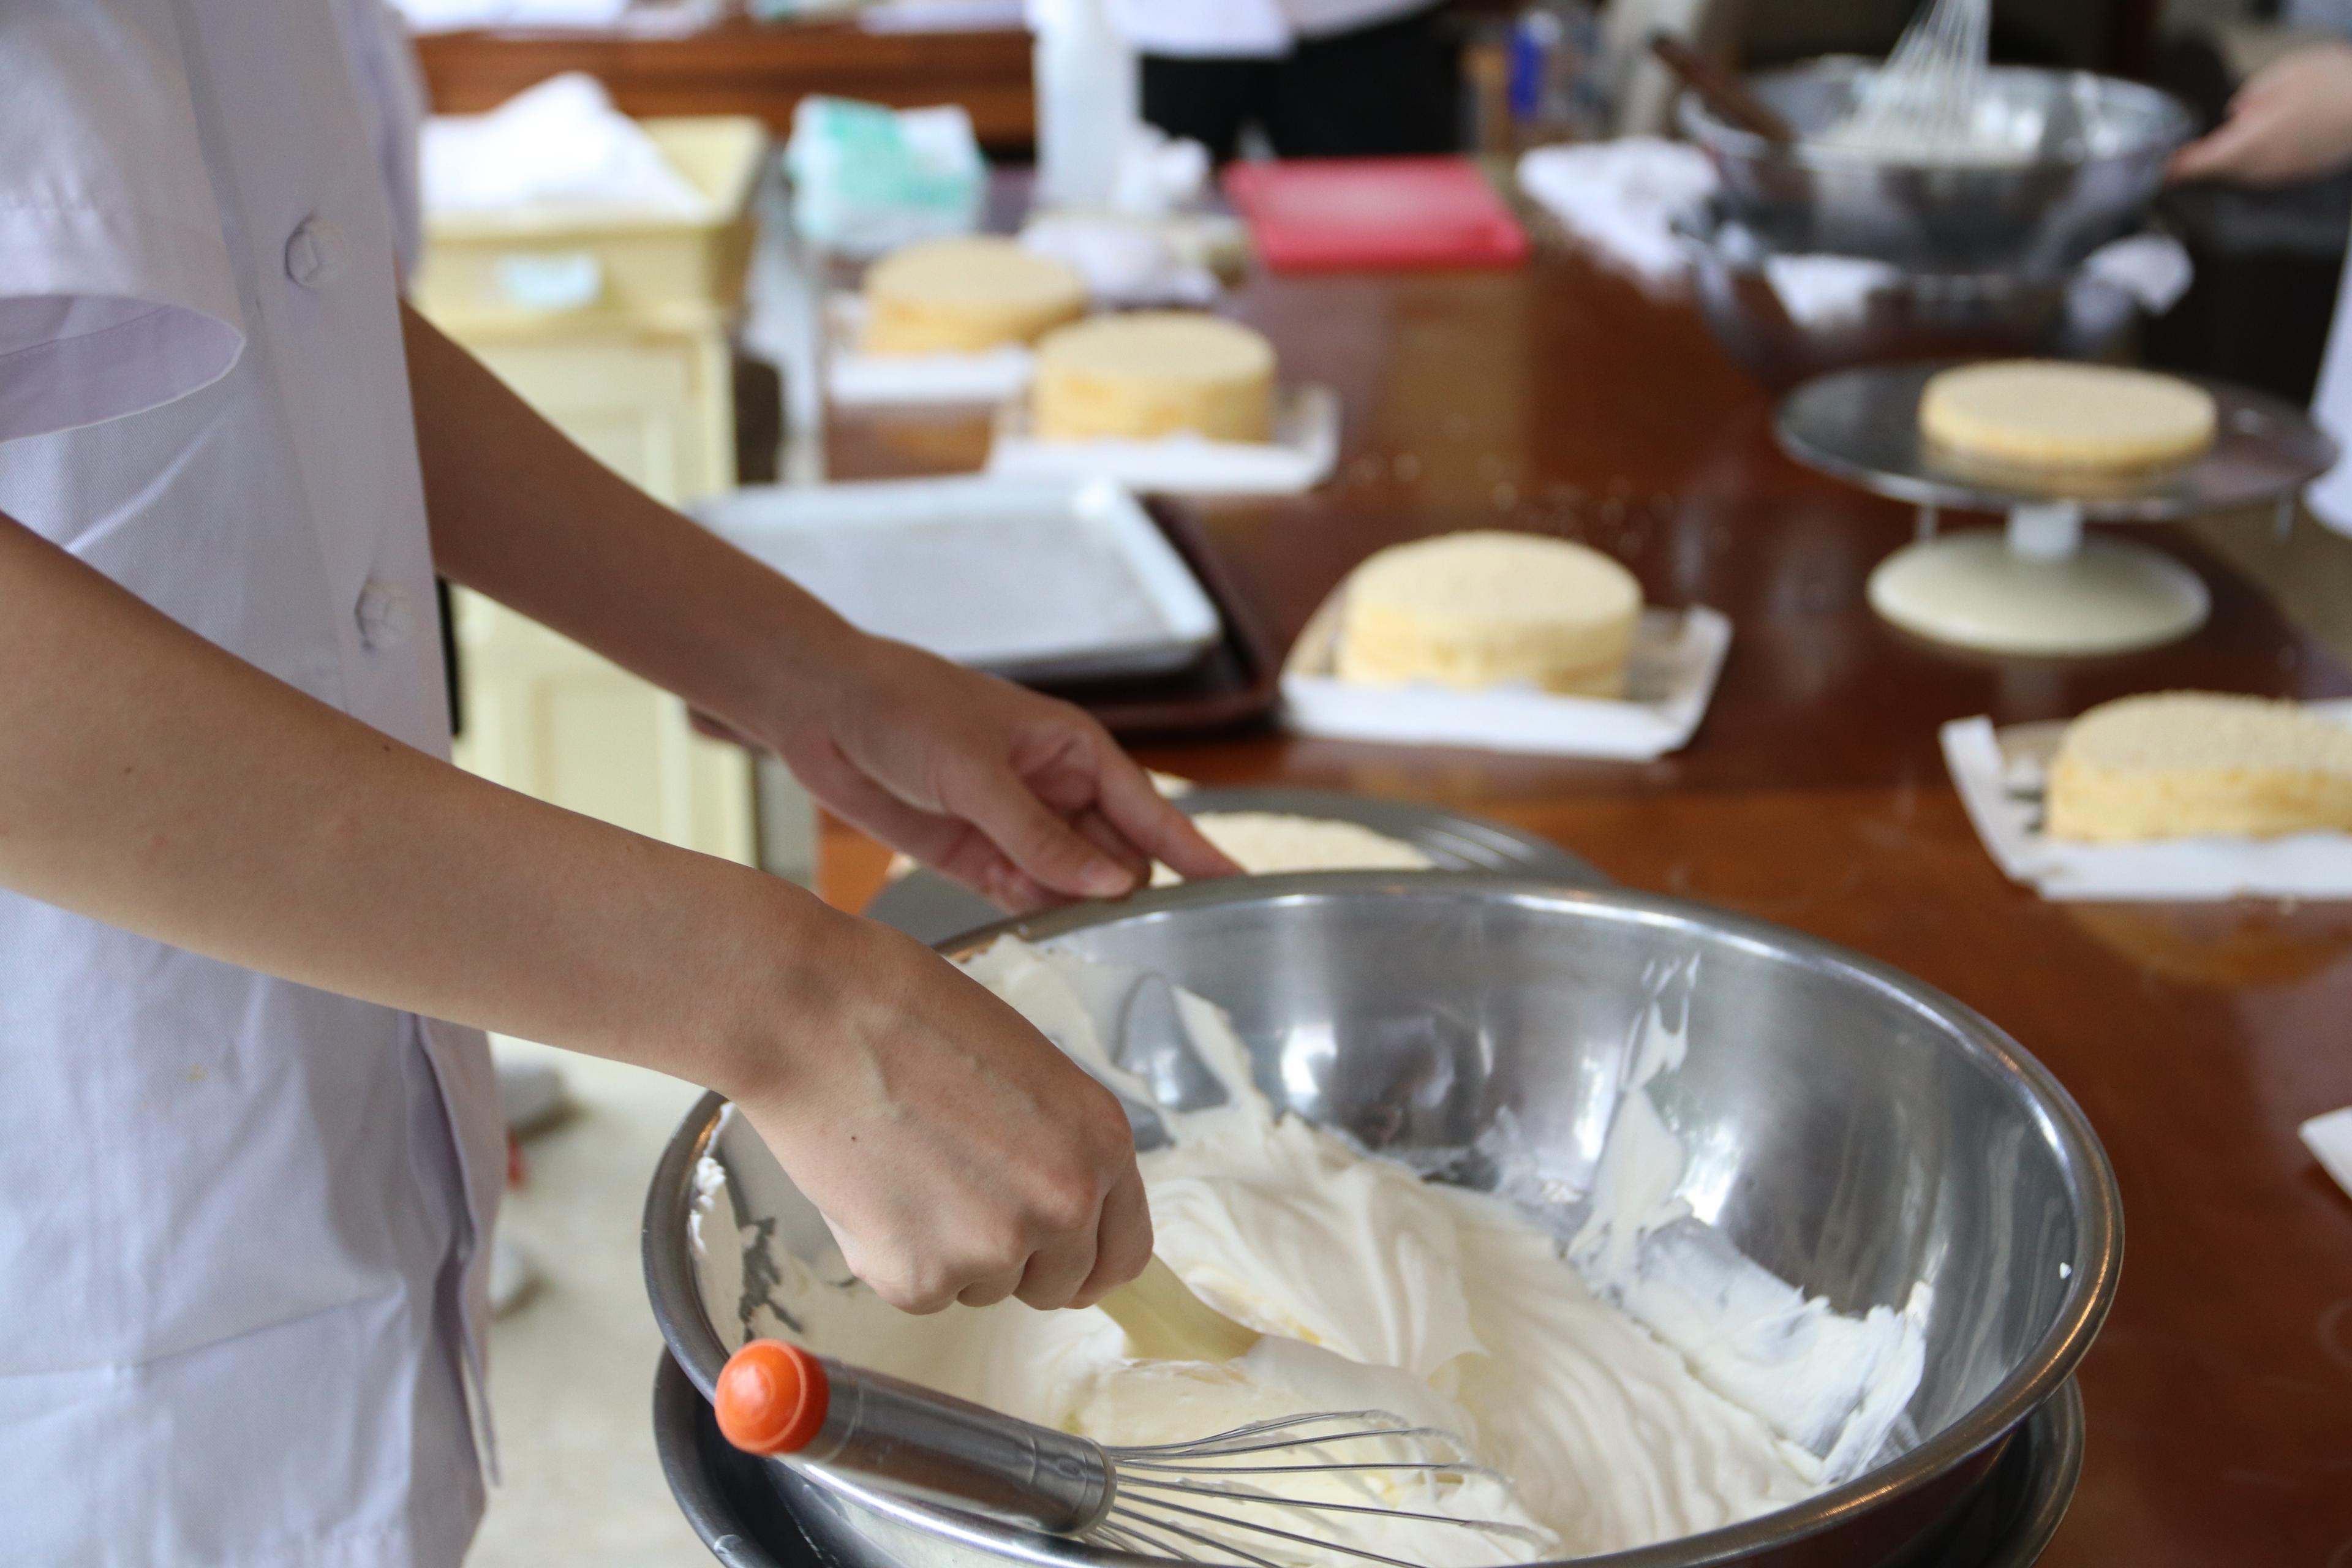 【職業体験】パティシエ体験 沖縄の食材を活かしたお菓子作り